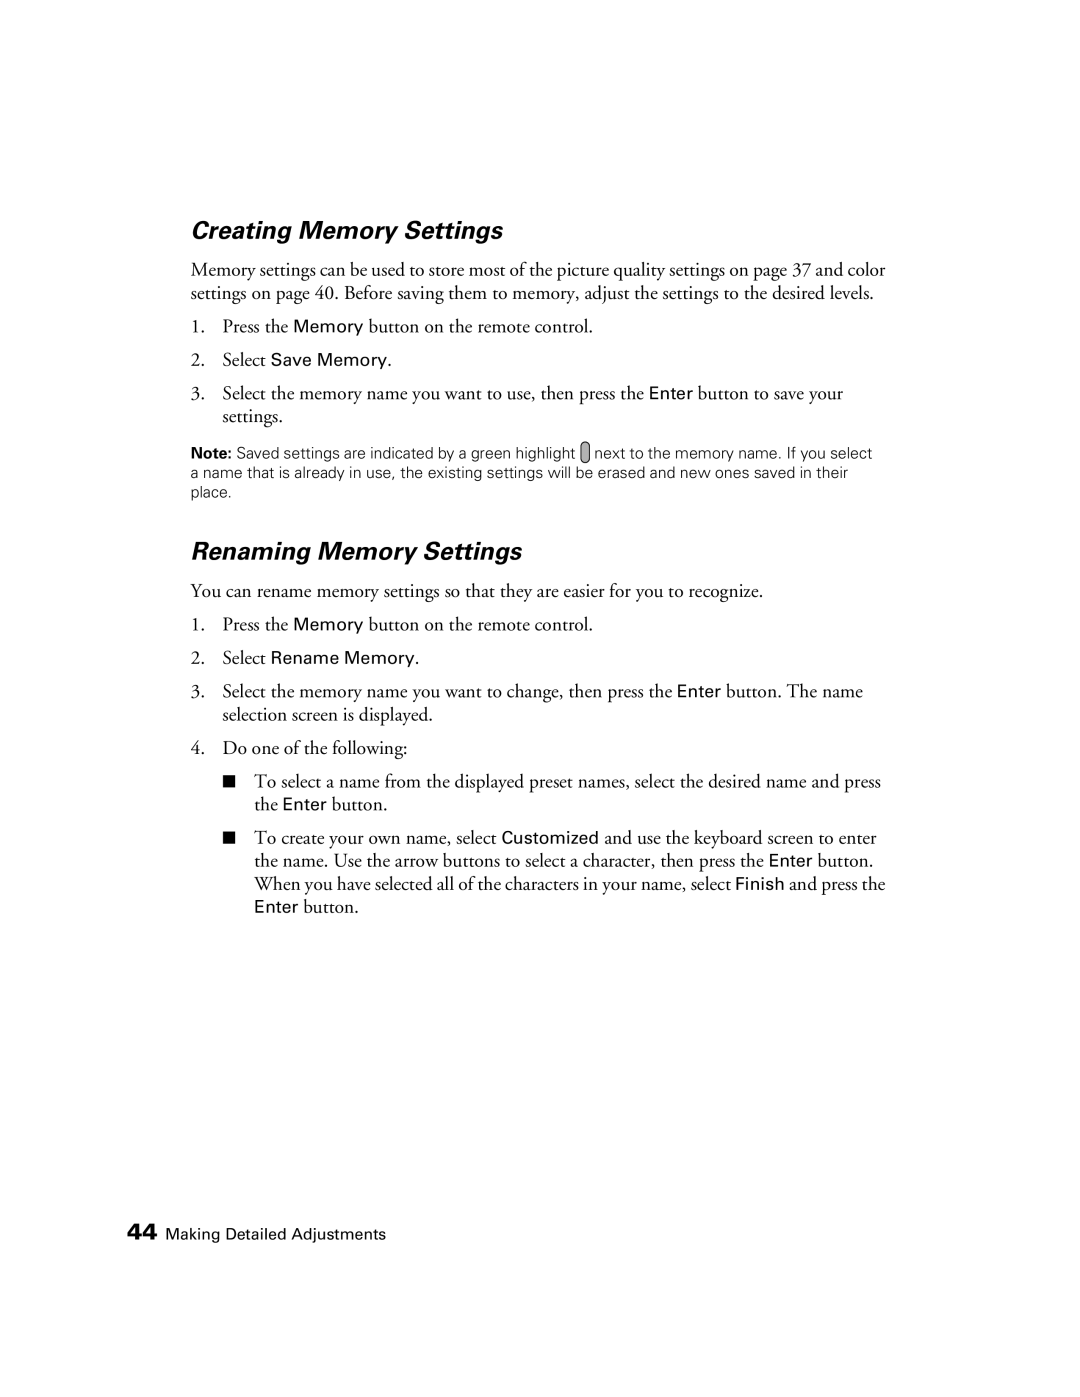 Epson 9350, 9700 manual Creating Memory Settings, Renaming Memory Settings 